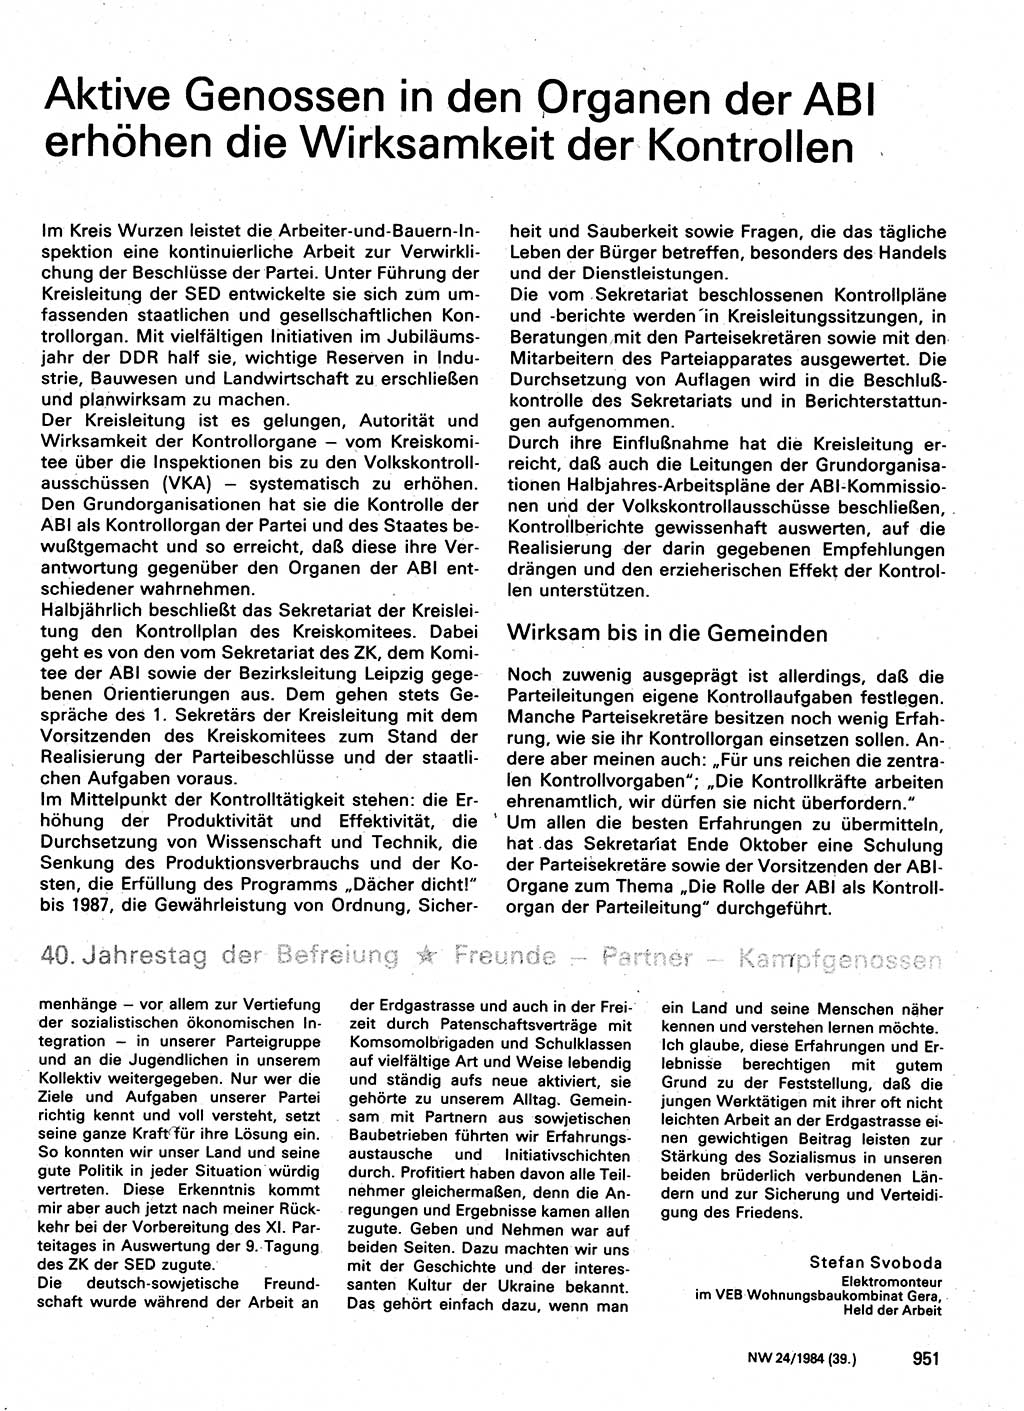 Neuer Weg (NW), Organ des Zentralkomitees (ZK) der SED (Sozialistische Einheitspartei Deutschlands) für Fragen des Parteilebens, 39. Jahrgang [Deutsche Demokratische Republik (DDR)] 1984, Seite 951 (NW ZK SED DDR 1984, S. 951)